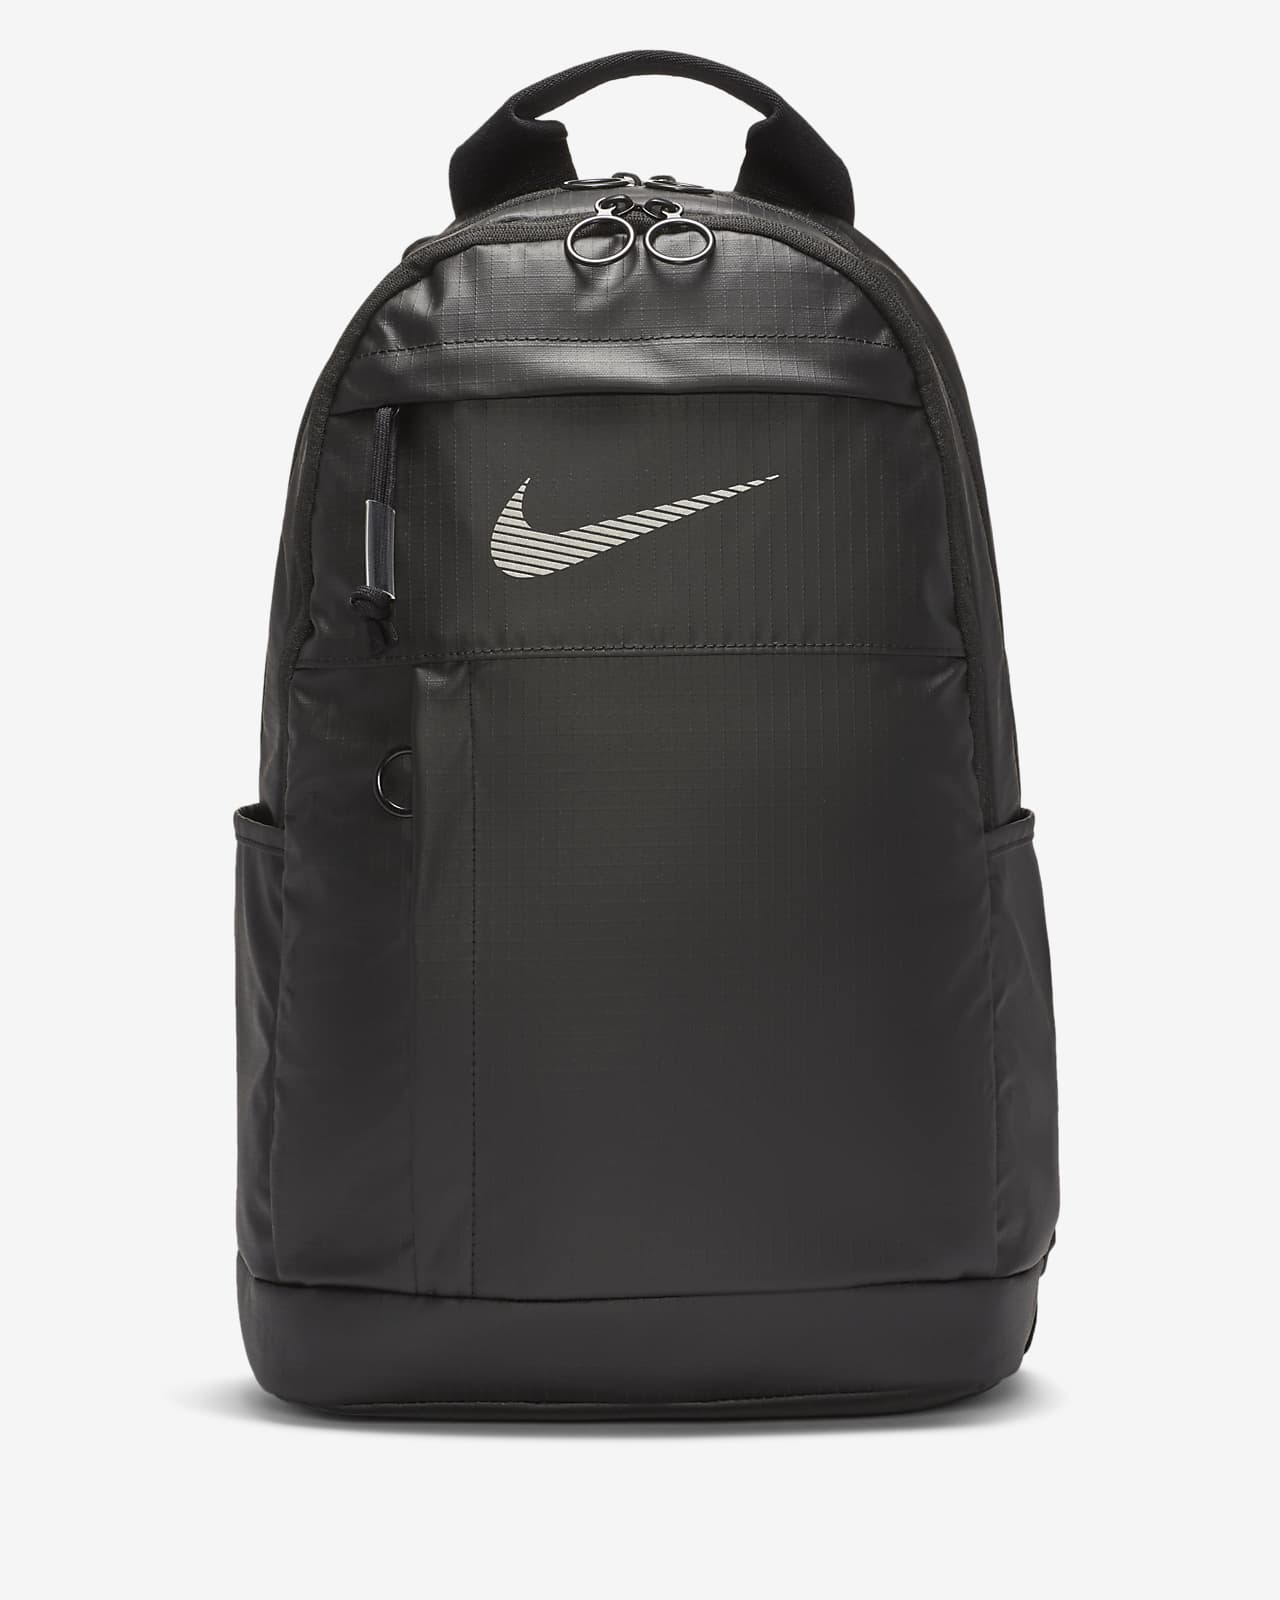 Nike Sportswear Backpack. Nike LU